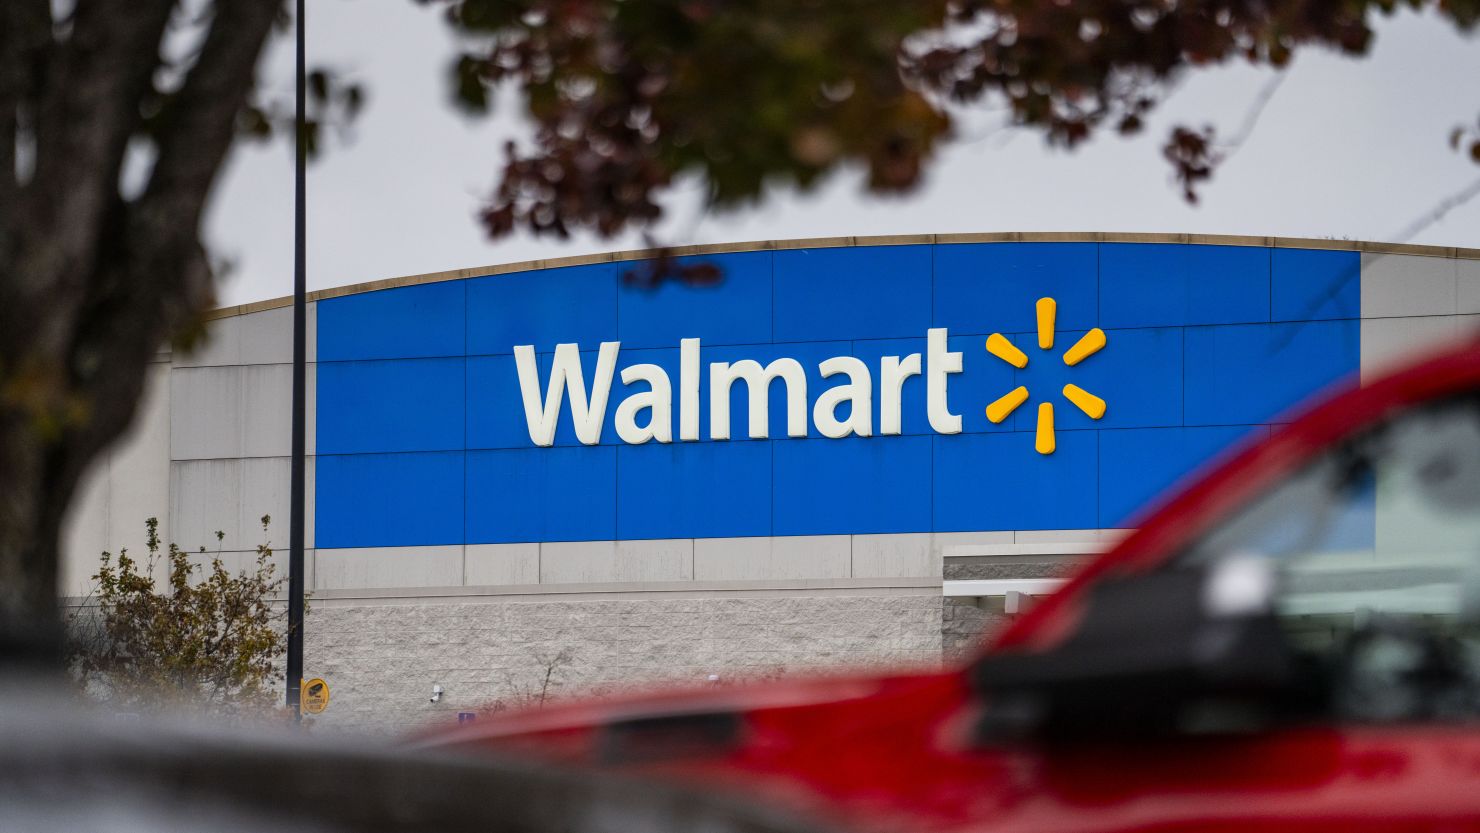 Blerësit kanë kohë deri në qershor për të kërkuar një pjesë prej 45 milion dollarësh të pagesës Walmart